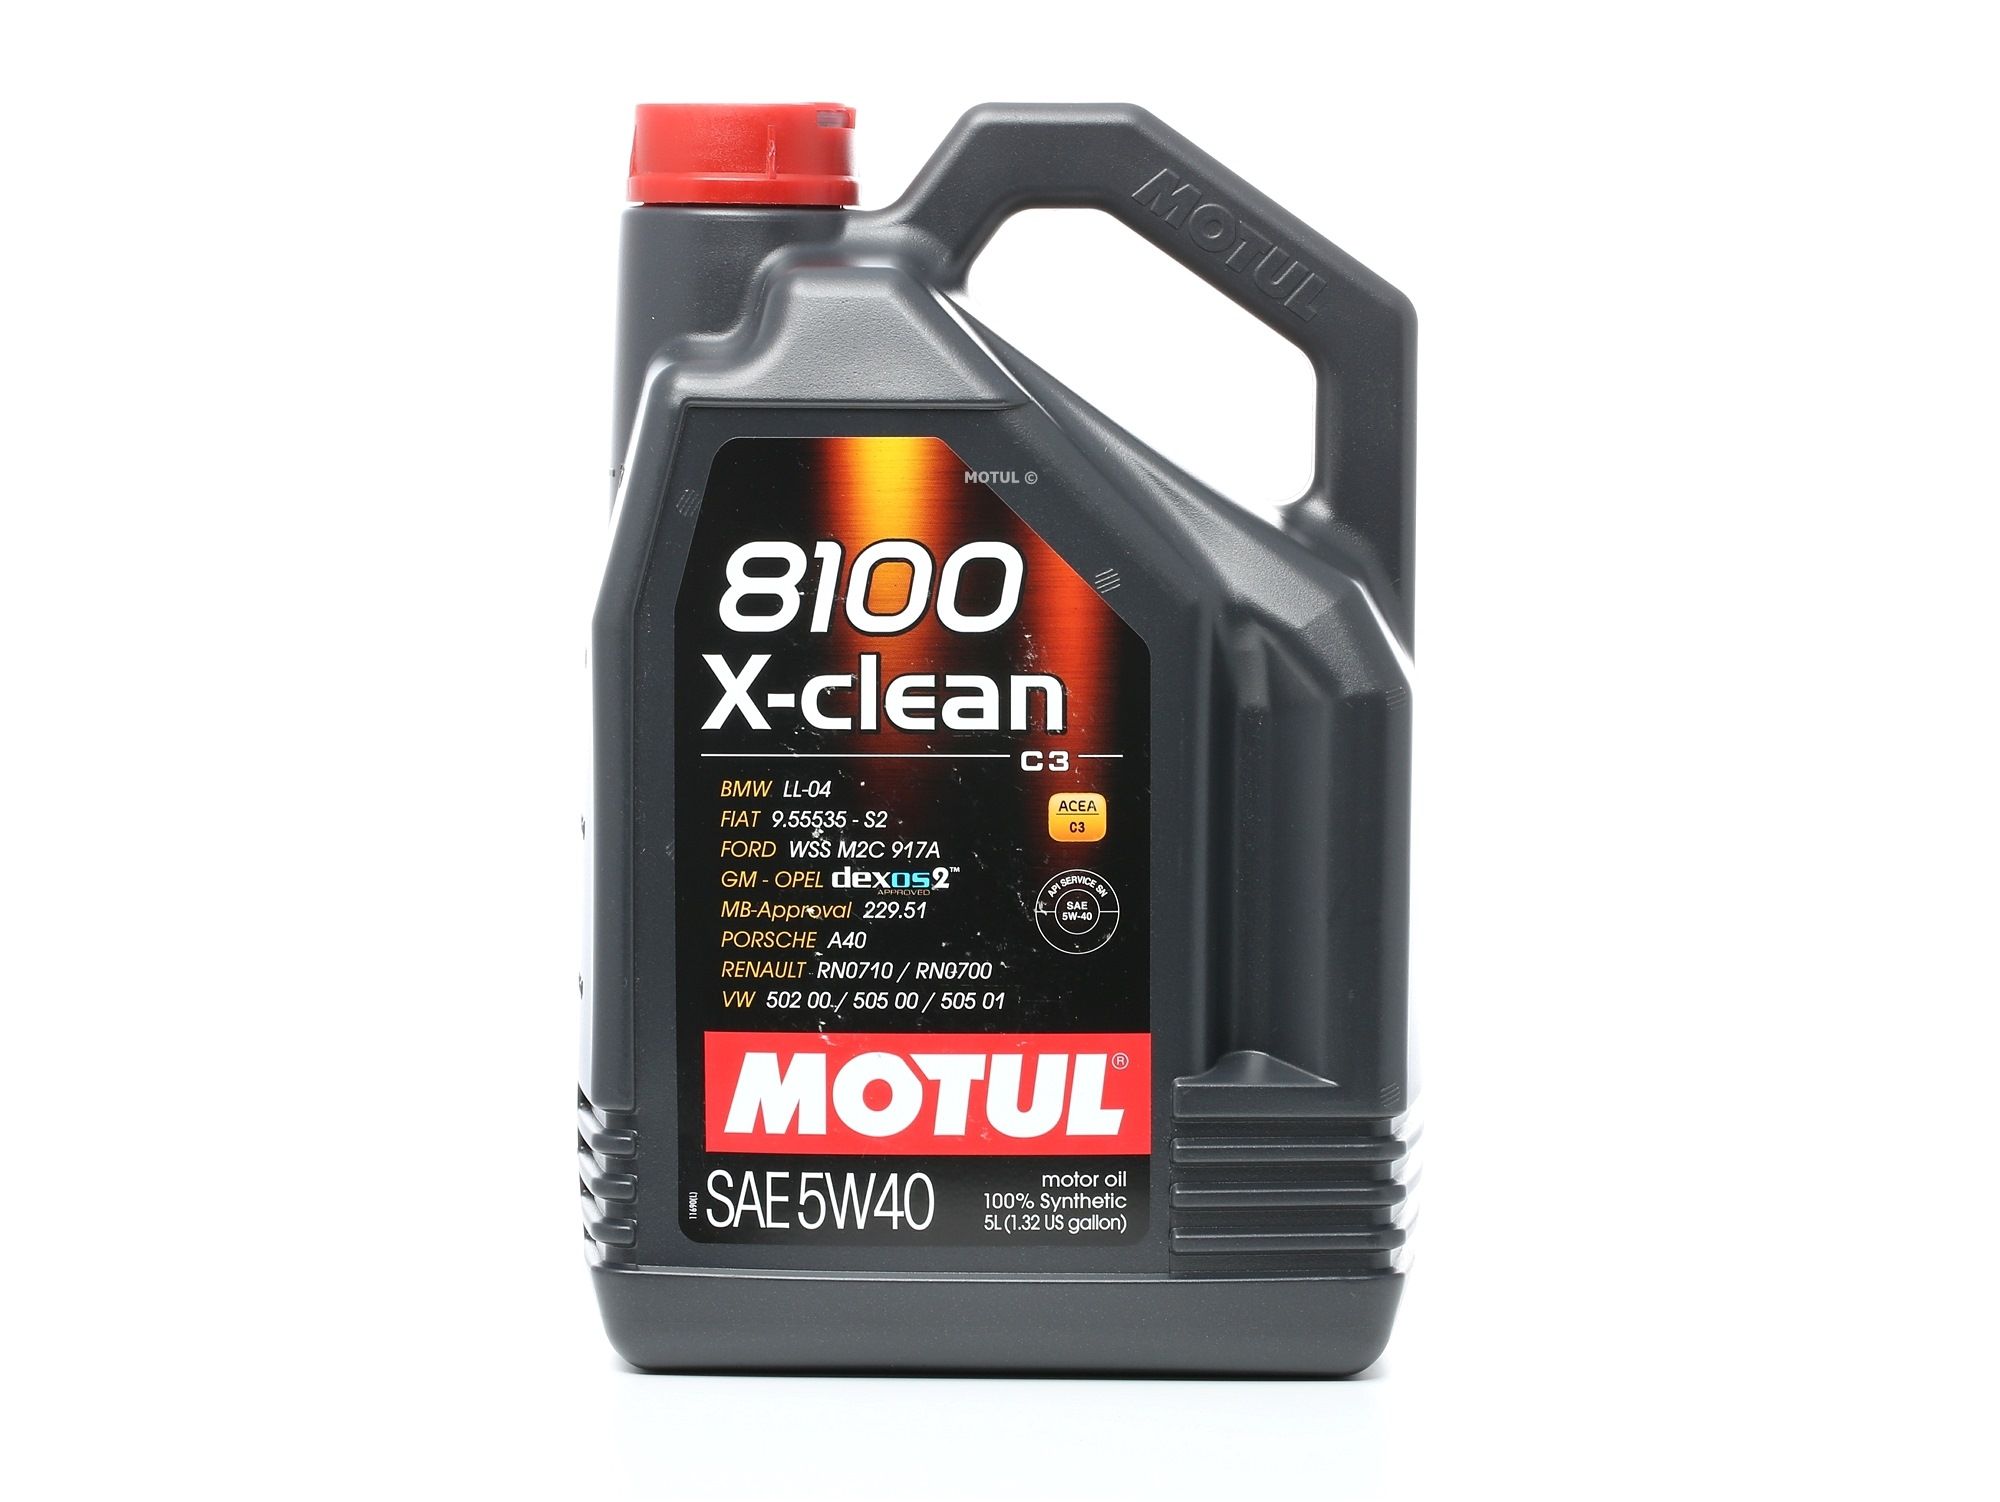 Kaufen KFZ Motoröl MOTUL 102051 8100, X-clean 5W-40, 5l